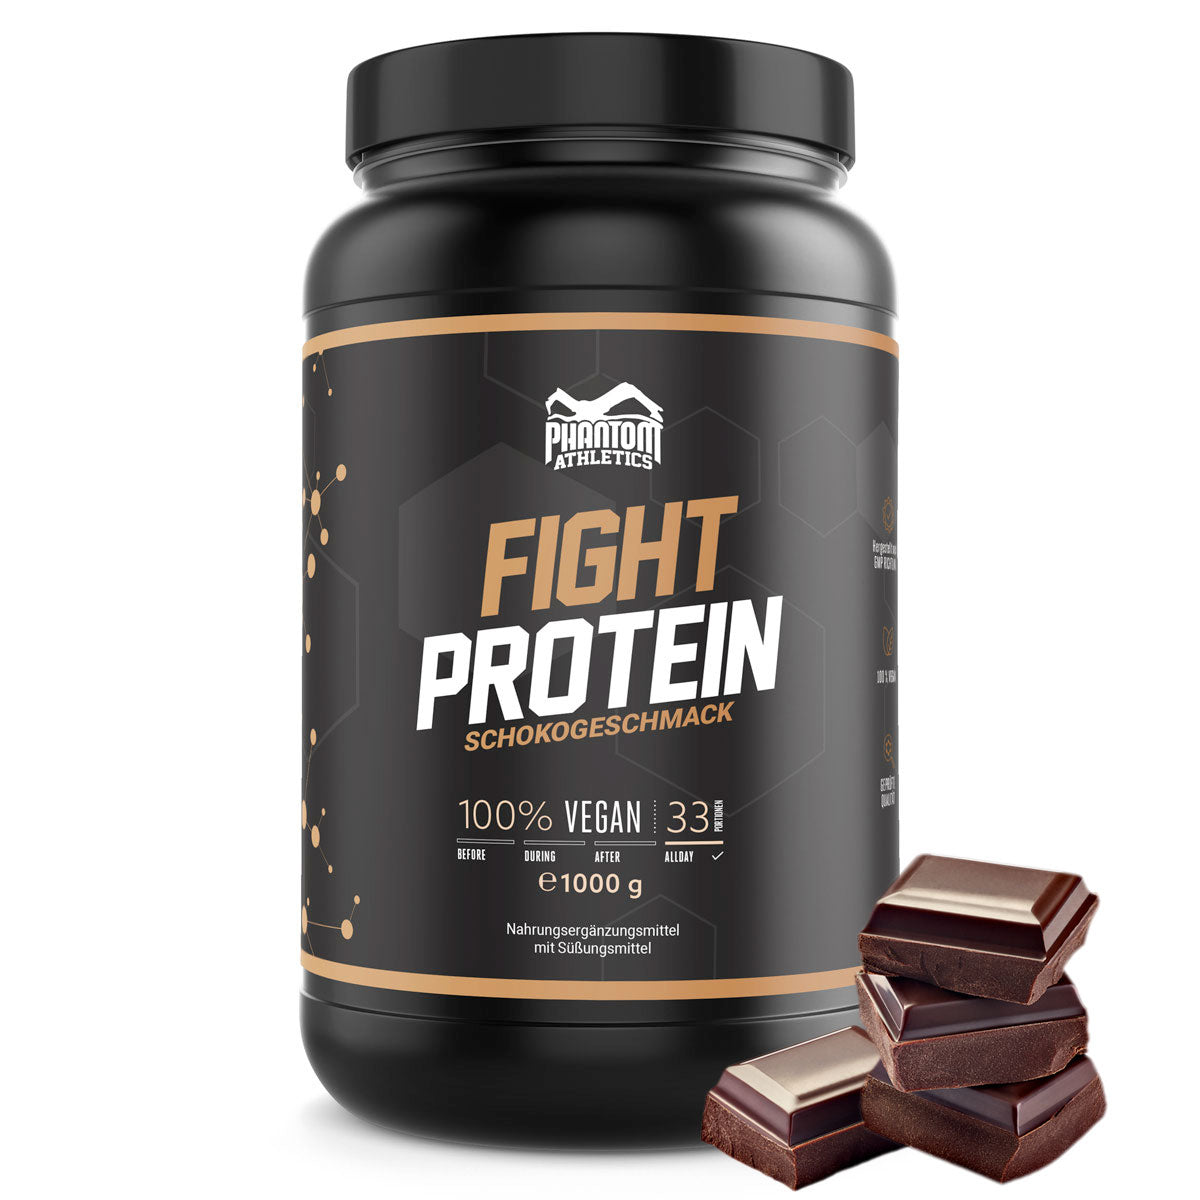 Phantom FIGHT-protein för kampsportare med en utsökt chokladsmak.